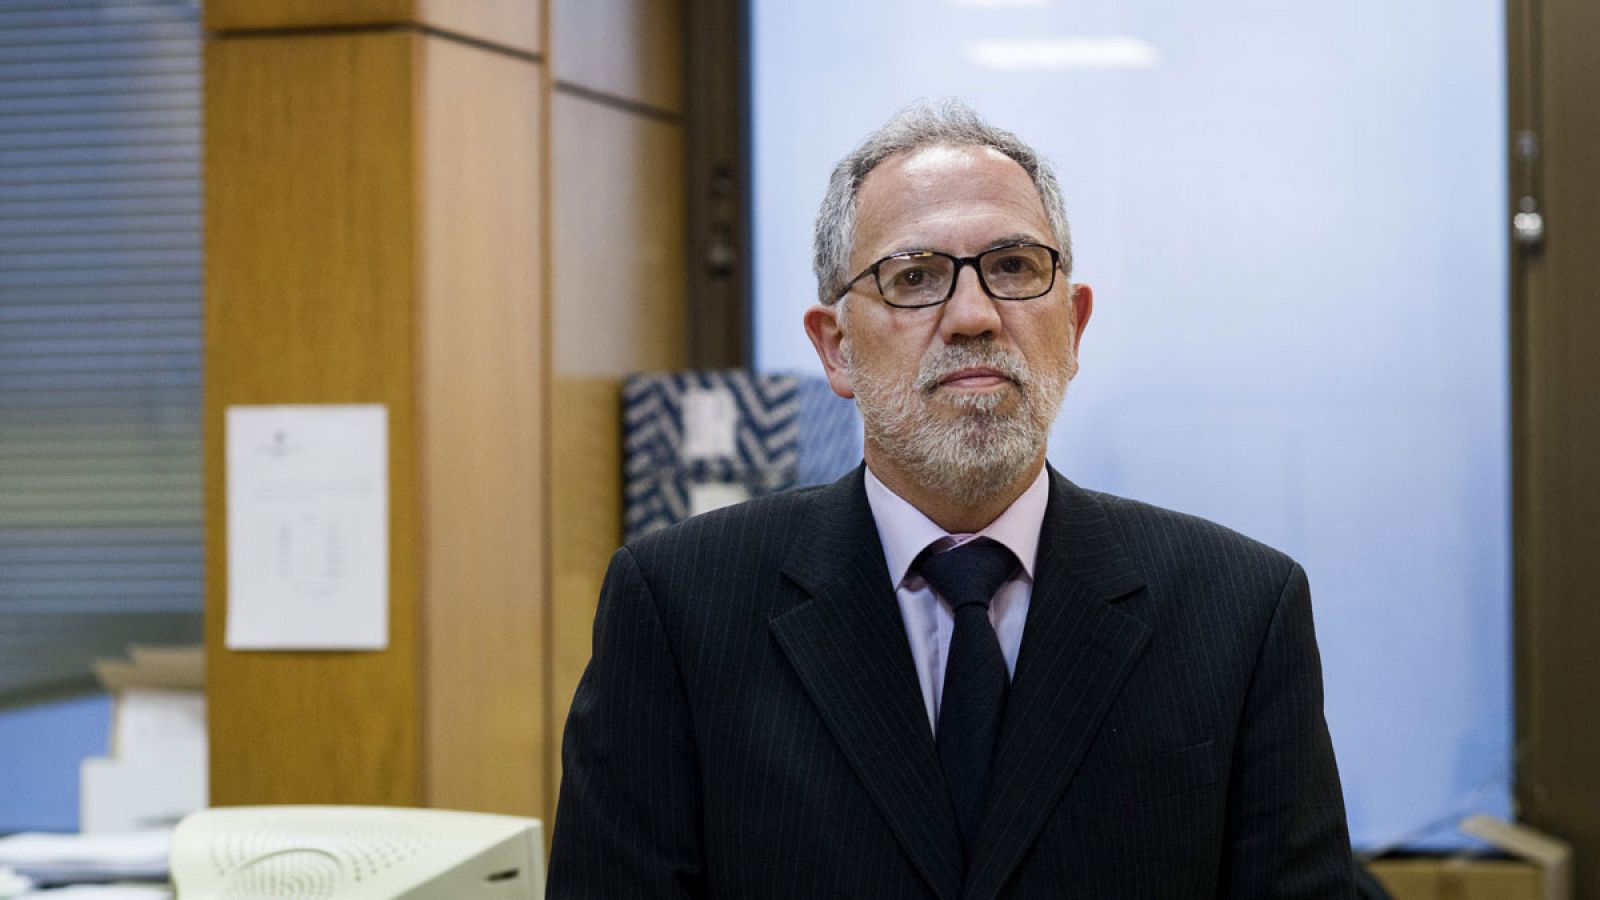 El juez decano de Madrid, Antonio Viejo, no cursará por "improcedente" la petición de las autoridades belgas